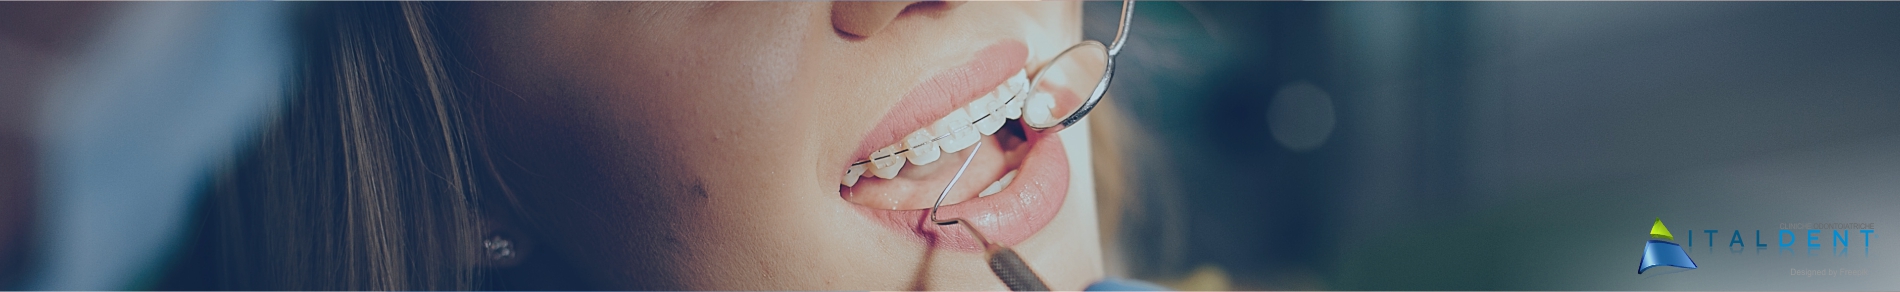 Clinica Odontoiatrica Italdent, Specialisti in chirugia implantare ed estetica del sorriso.